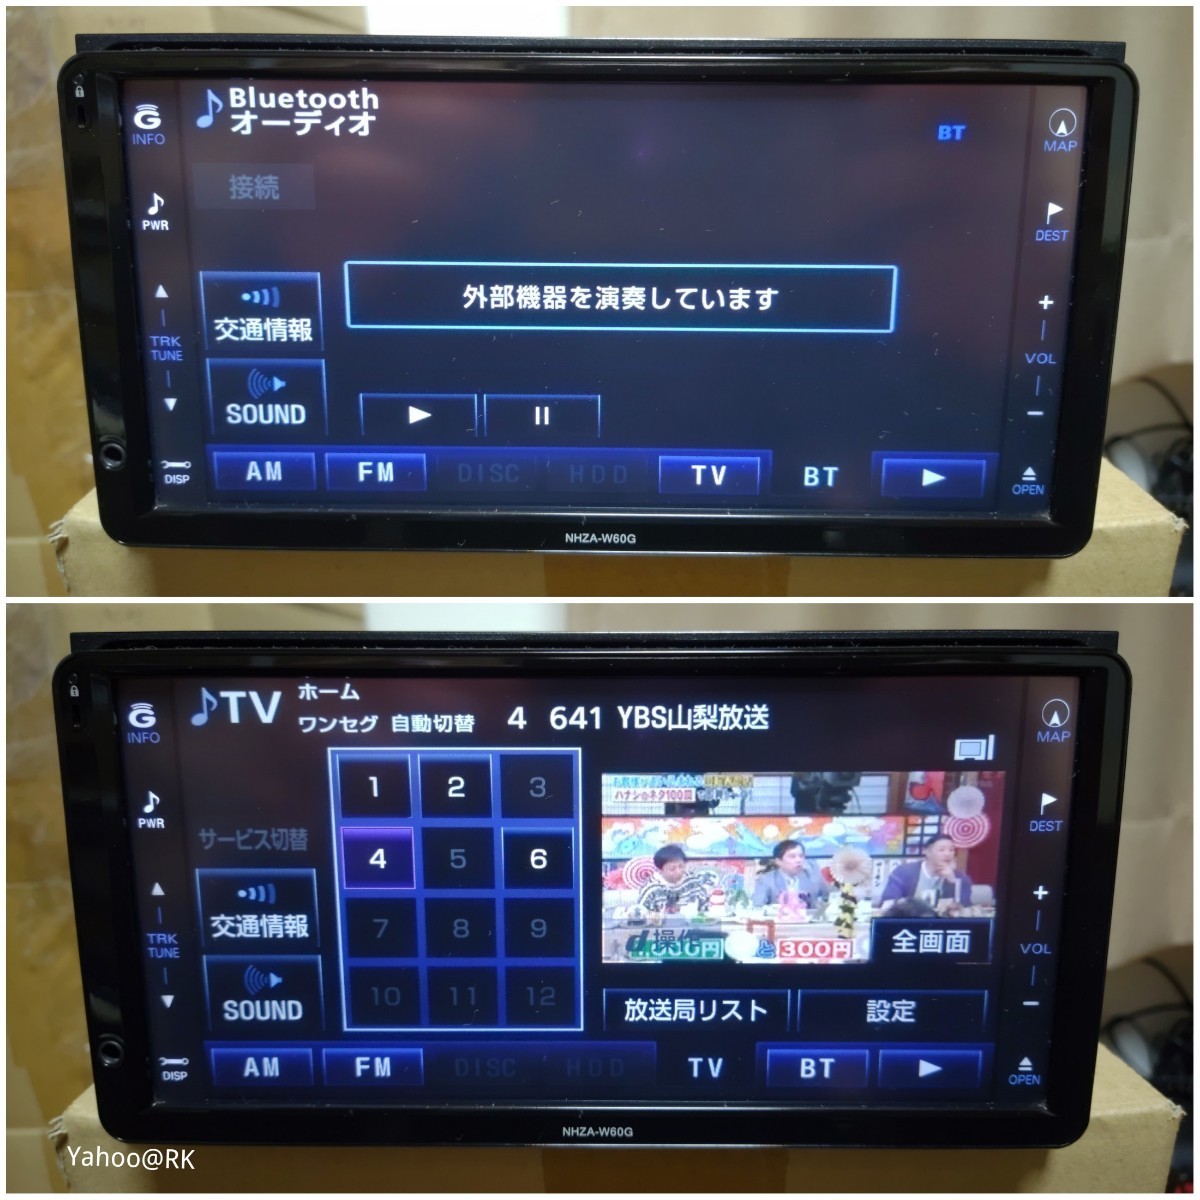 トヨタ純正 HDDナビ 型式 NHZA-W60G DVD再生 テレビ フルセグ SDカード USB CD録音 Bluetooth AISIN 品番 08545-00T11_画像2